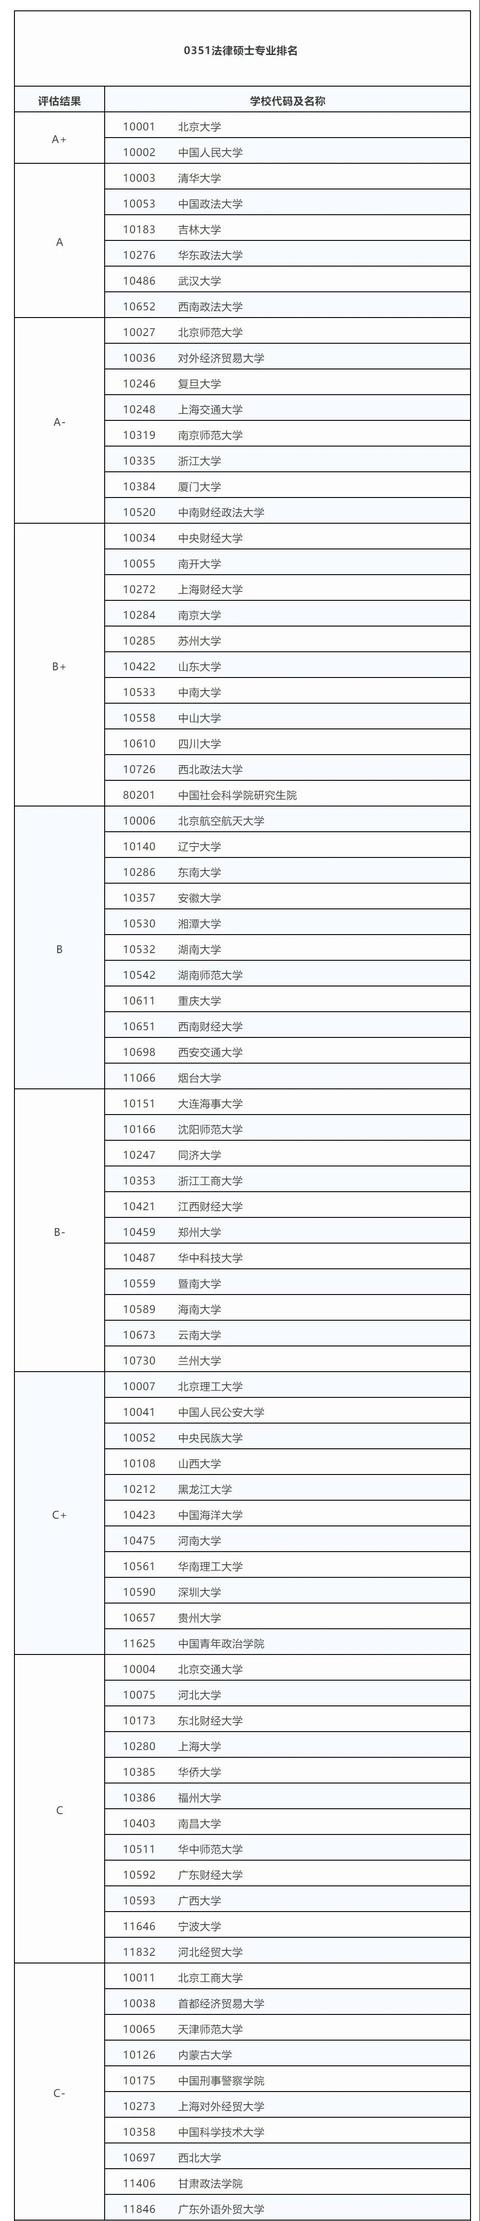 中国法学专业排名,法学专业院校排名TOP100 第1张